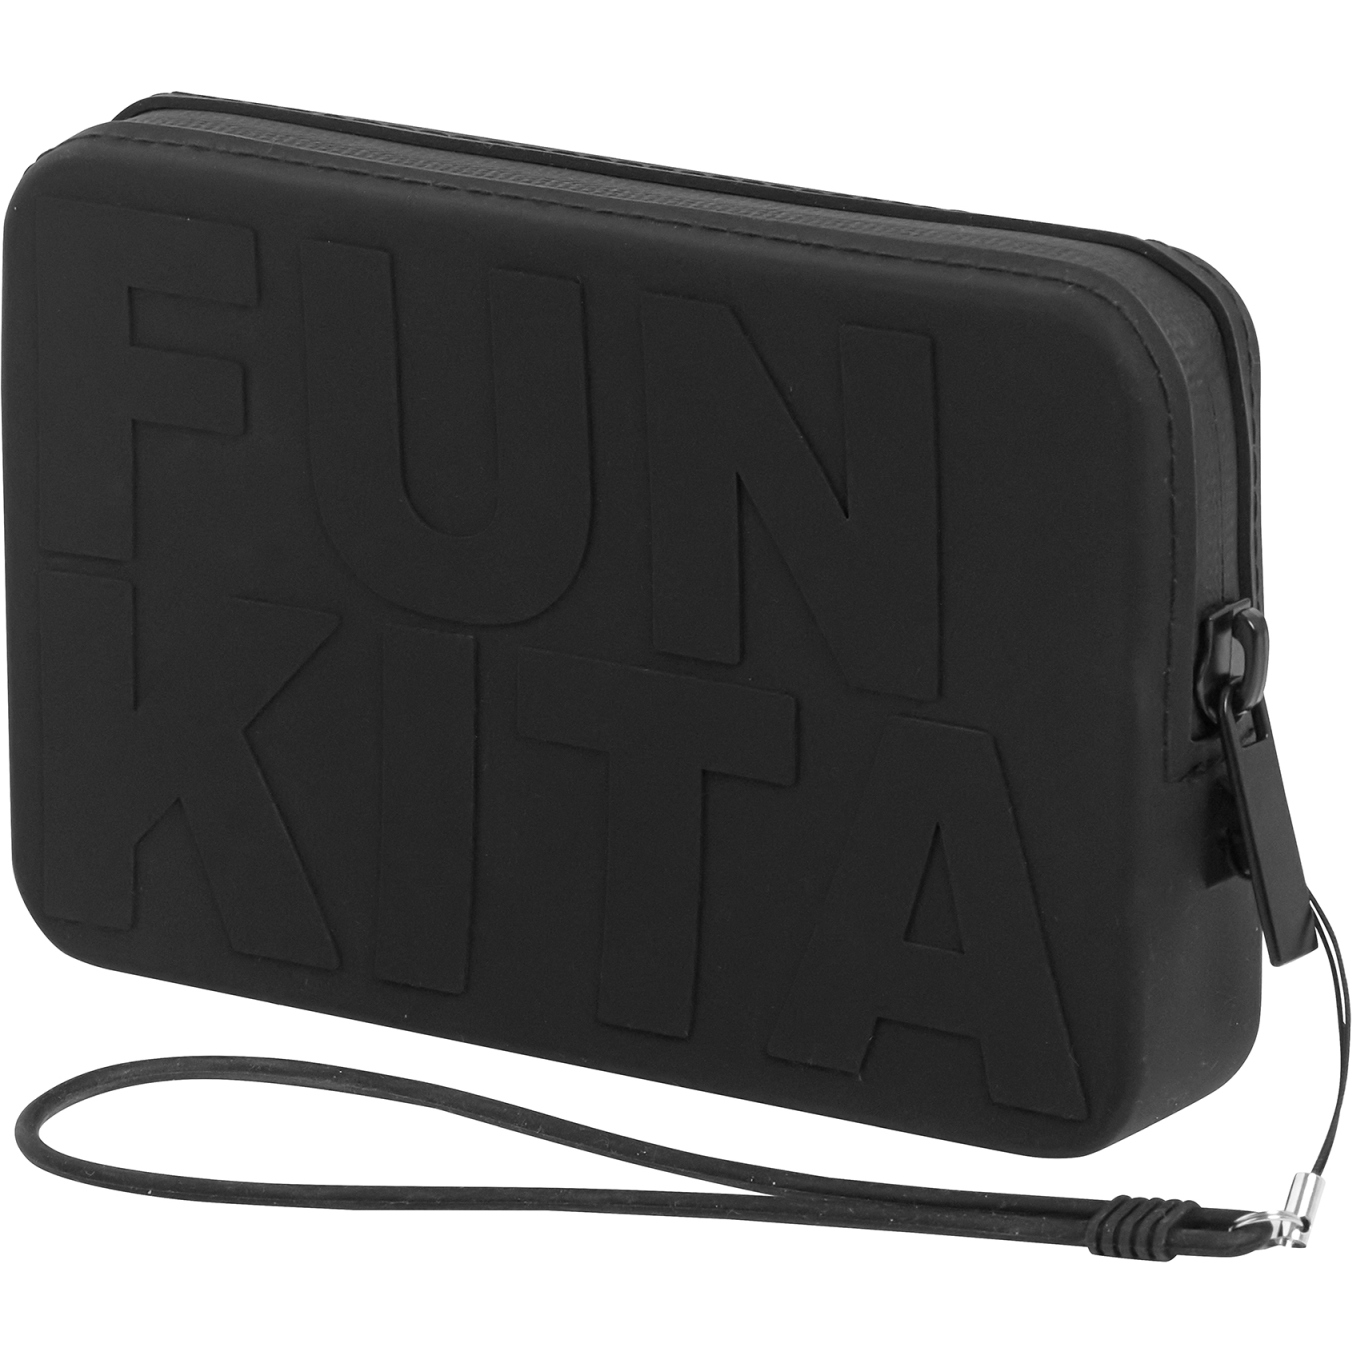 Picture of Funkita Catch Up Clutch Smartphone Bag - Wetta Preta